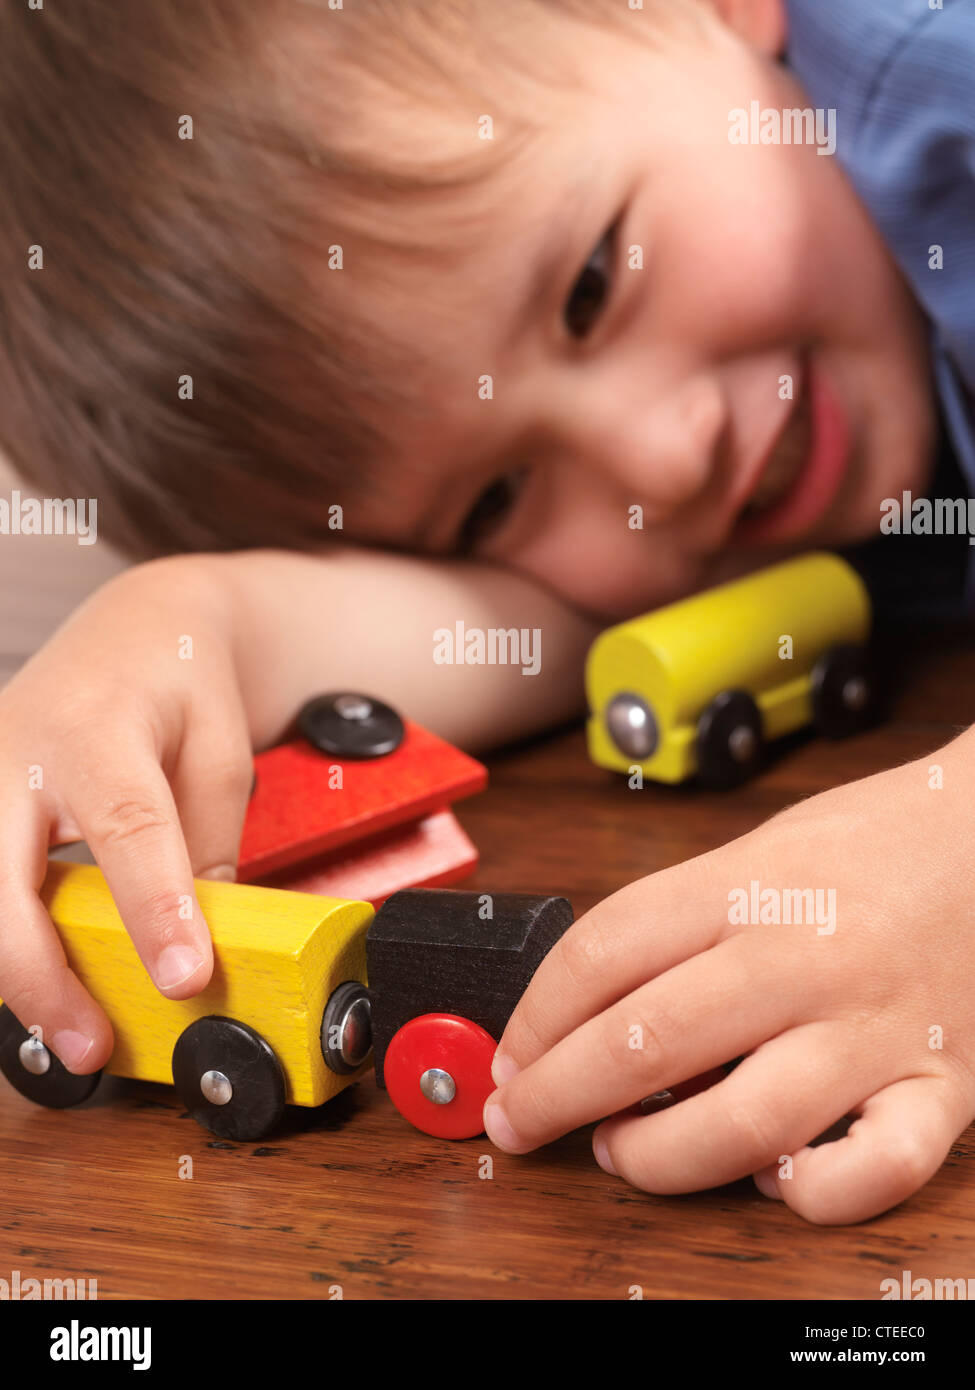 Felice anno due vecchio ragazzo giocando con un colorato trenino su pavimento in legno duro Foto Stock